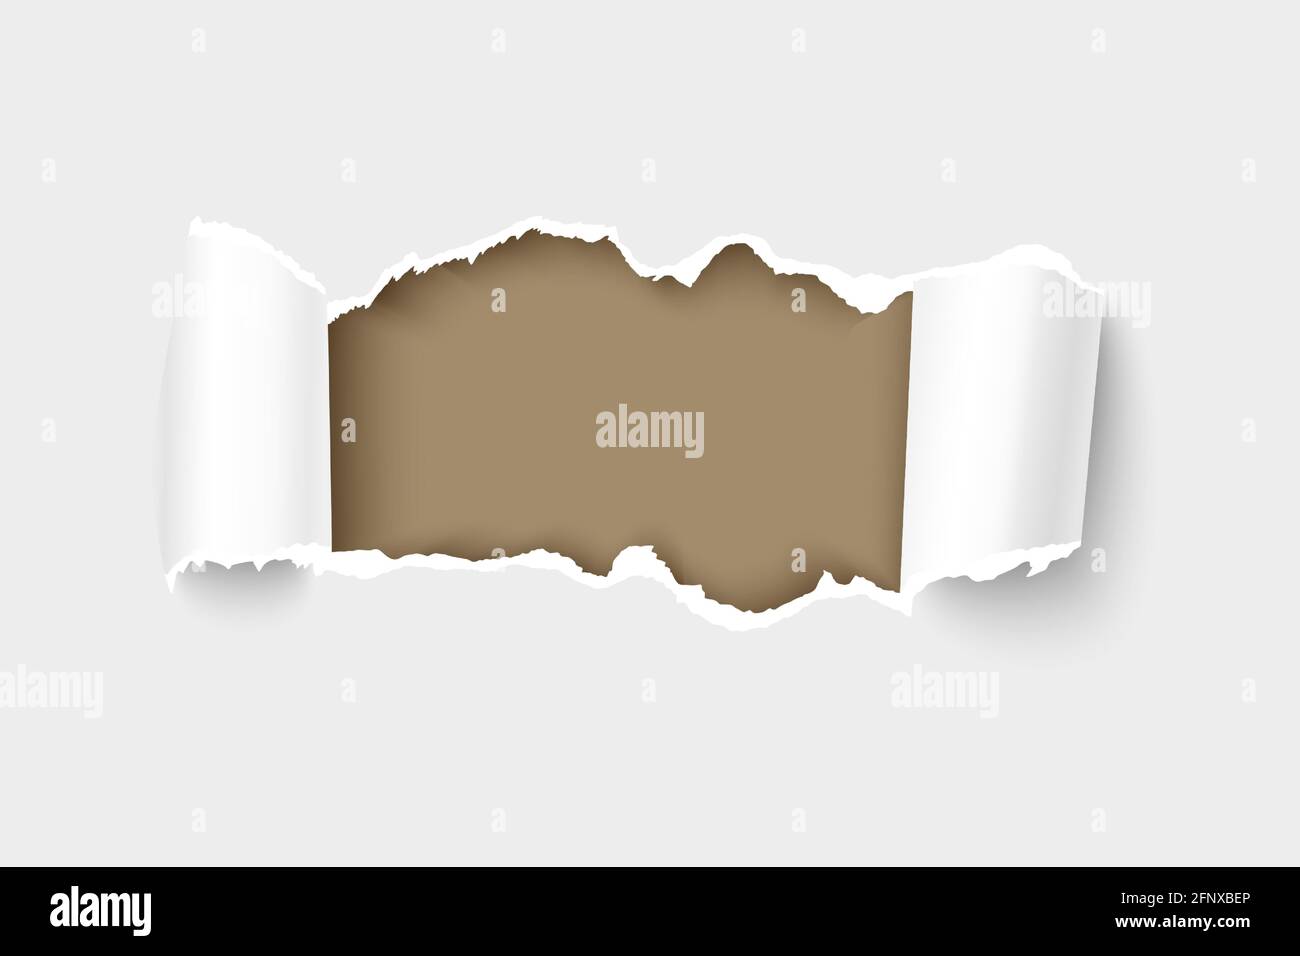 Immagine vettoriale 3d realistica della carta strappata con bordi arrotolati con cornice per il testo. Foro nella carta Illustrazione Vettoriale